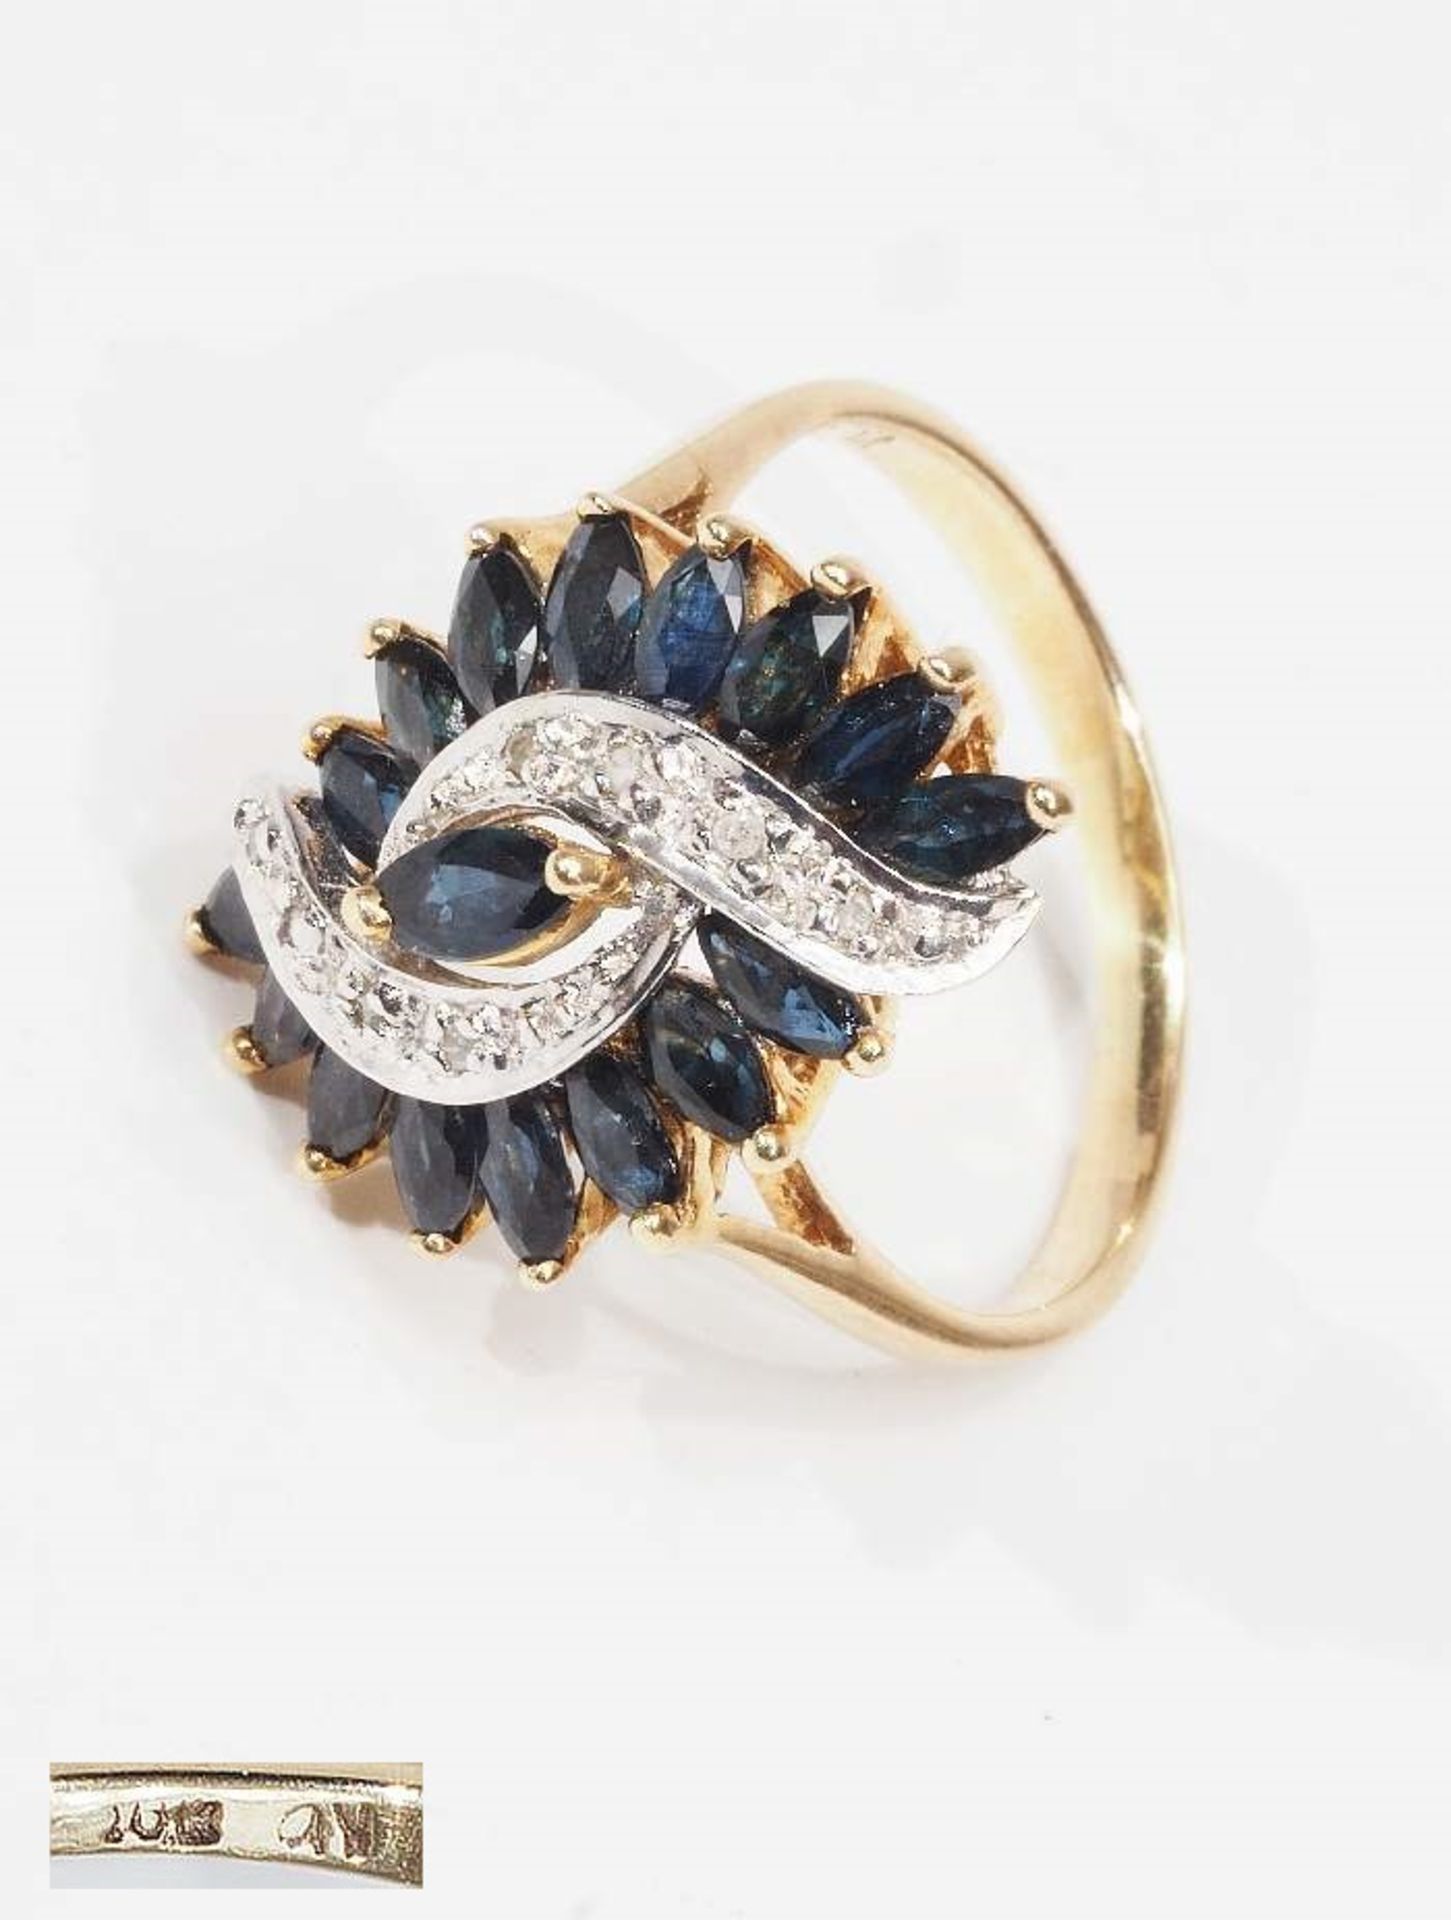 Ring mit Saphiren-Navetten und kleinem Diamantbesatz. 10 Kt. = 416 Gelbgold, Ringgröße 55, ca. 3,5